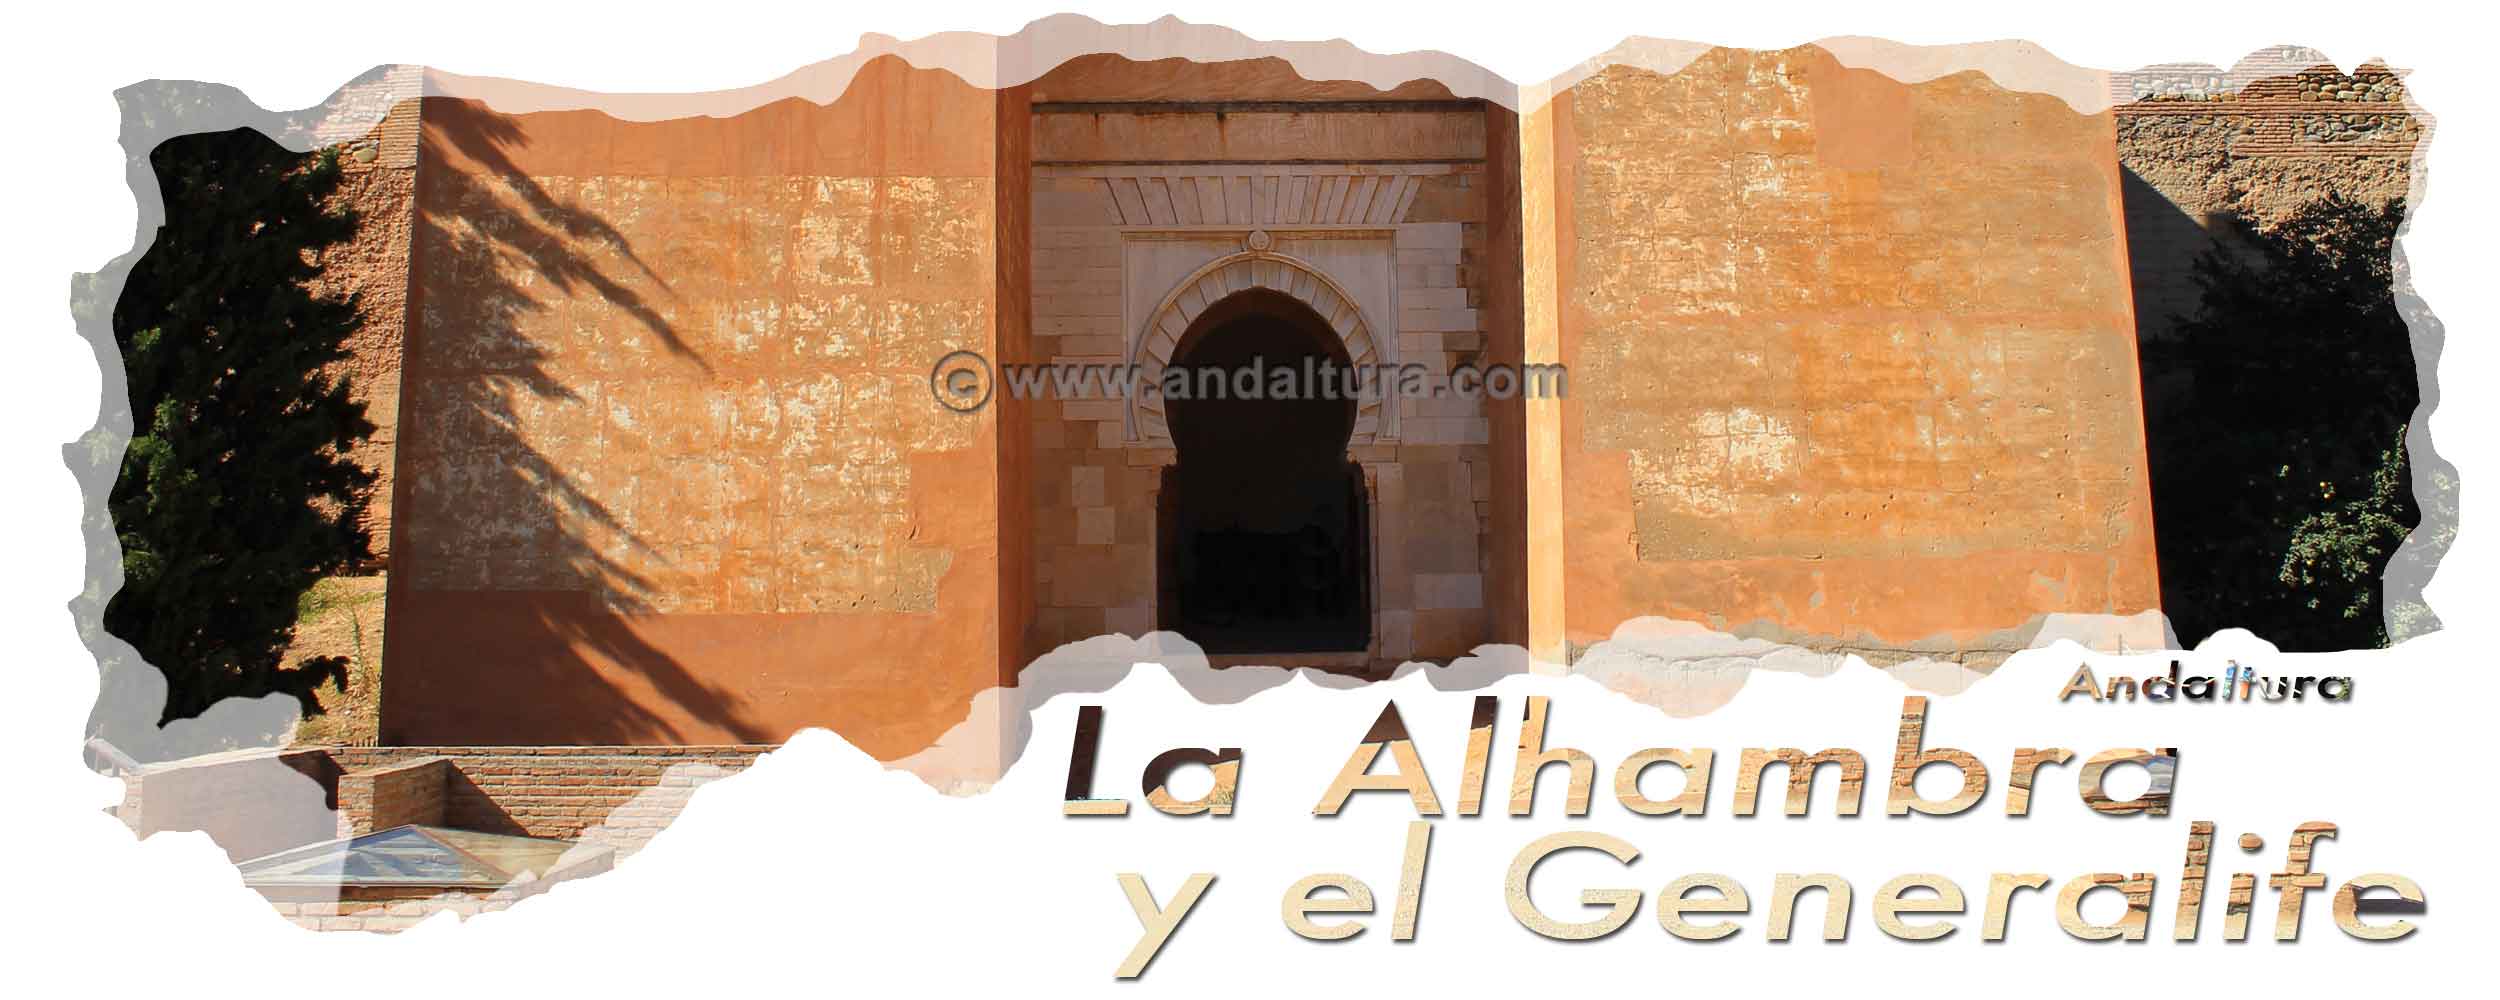 Portada Exterior de la Puerta de los Siete Suelos - Cabecera Vistas de la Alhambra desde el Mirador de San Cristóbal